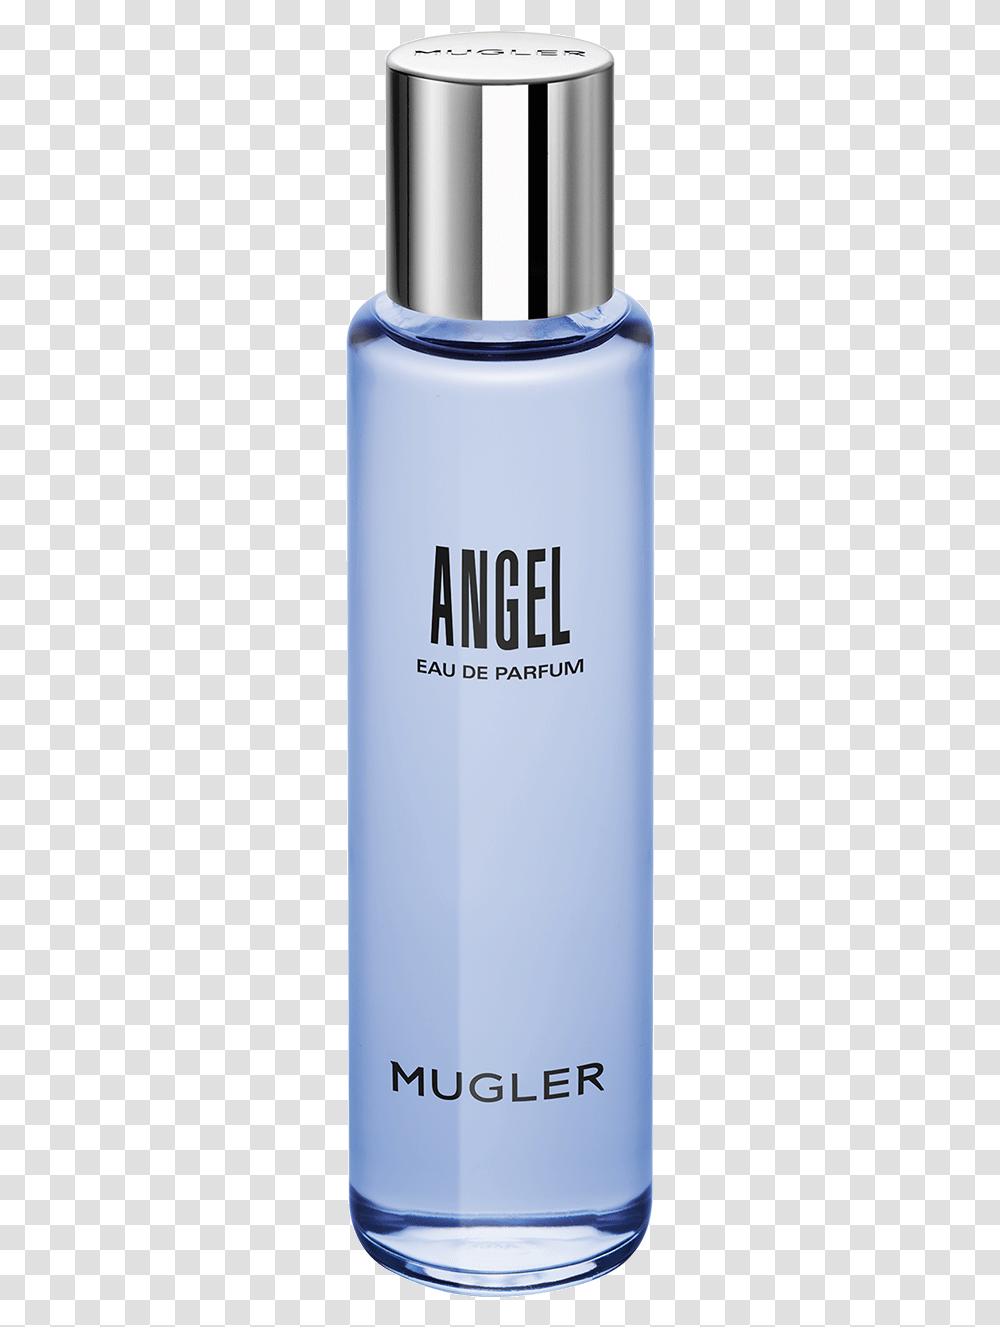 Angel Eau De Parfum Refill Bottle Thierry Mugler Angel Edp Refillable Bottle, Aluminium, Tin, Can, Spray Can Transparent Png